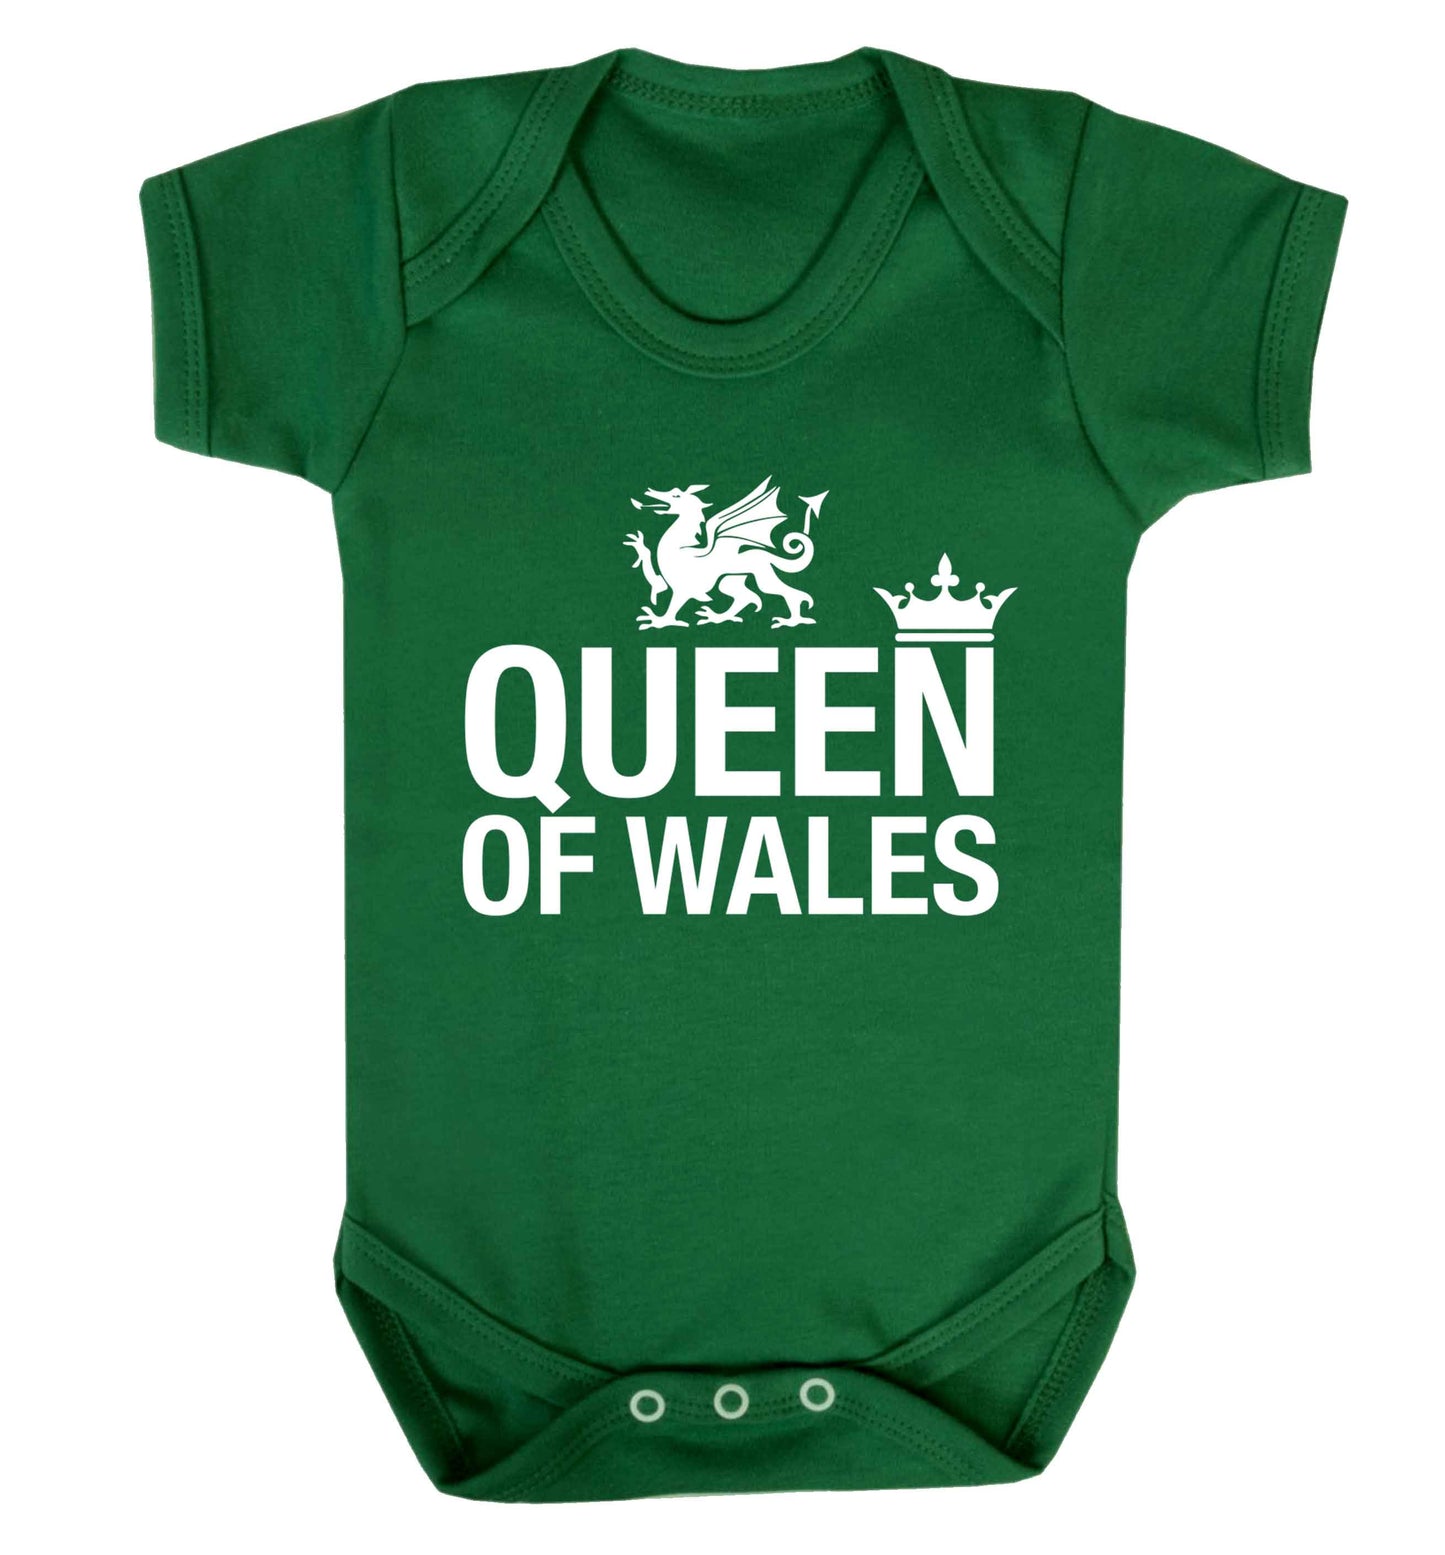 Queen of Wales Baby Vest green 18-24 months